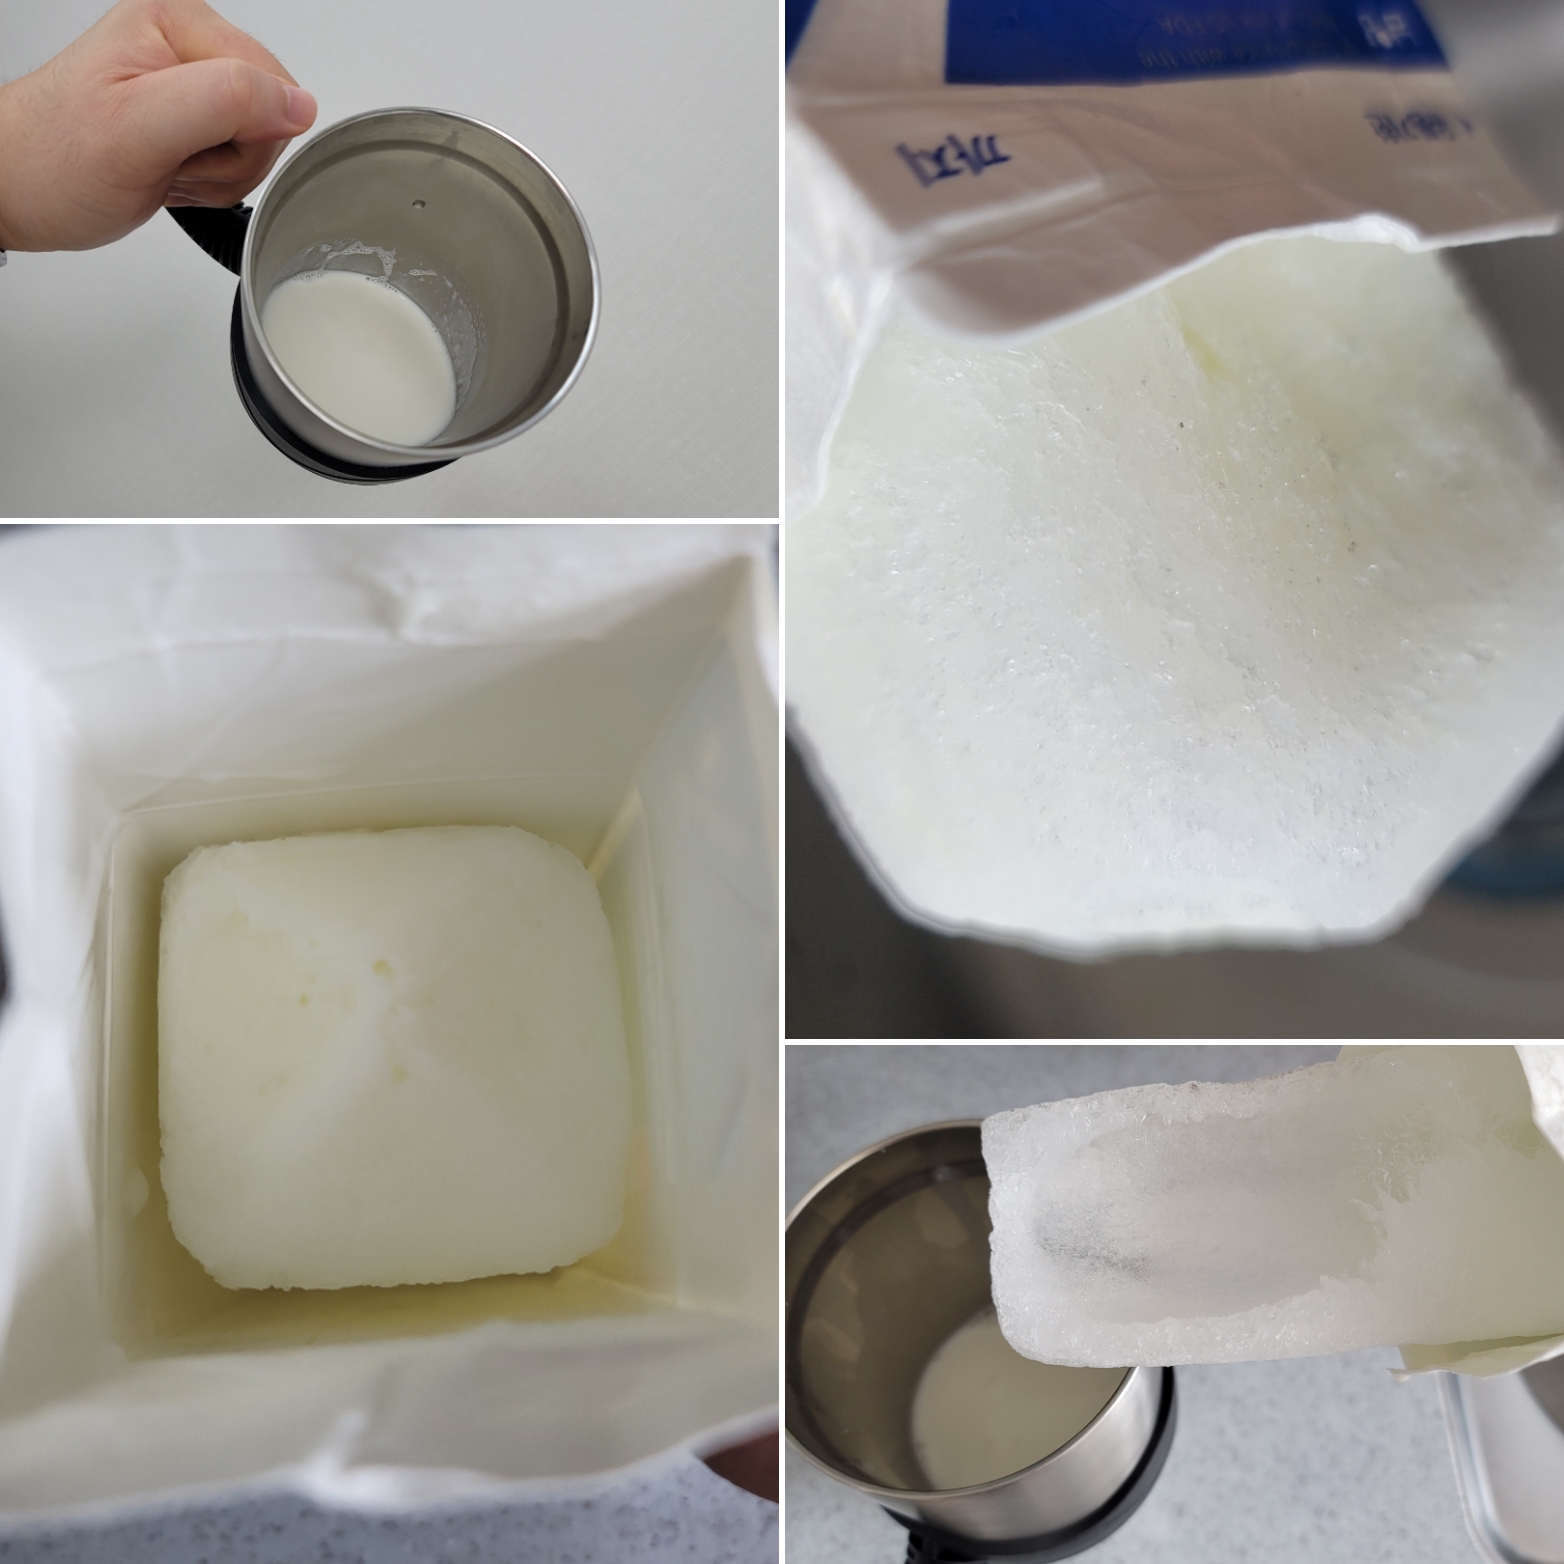 냉동추출된 우유사진과 분리된 얼음사진